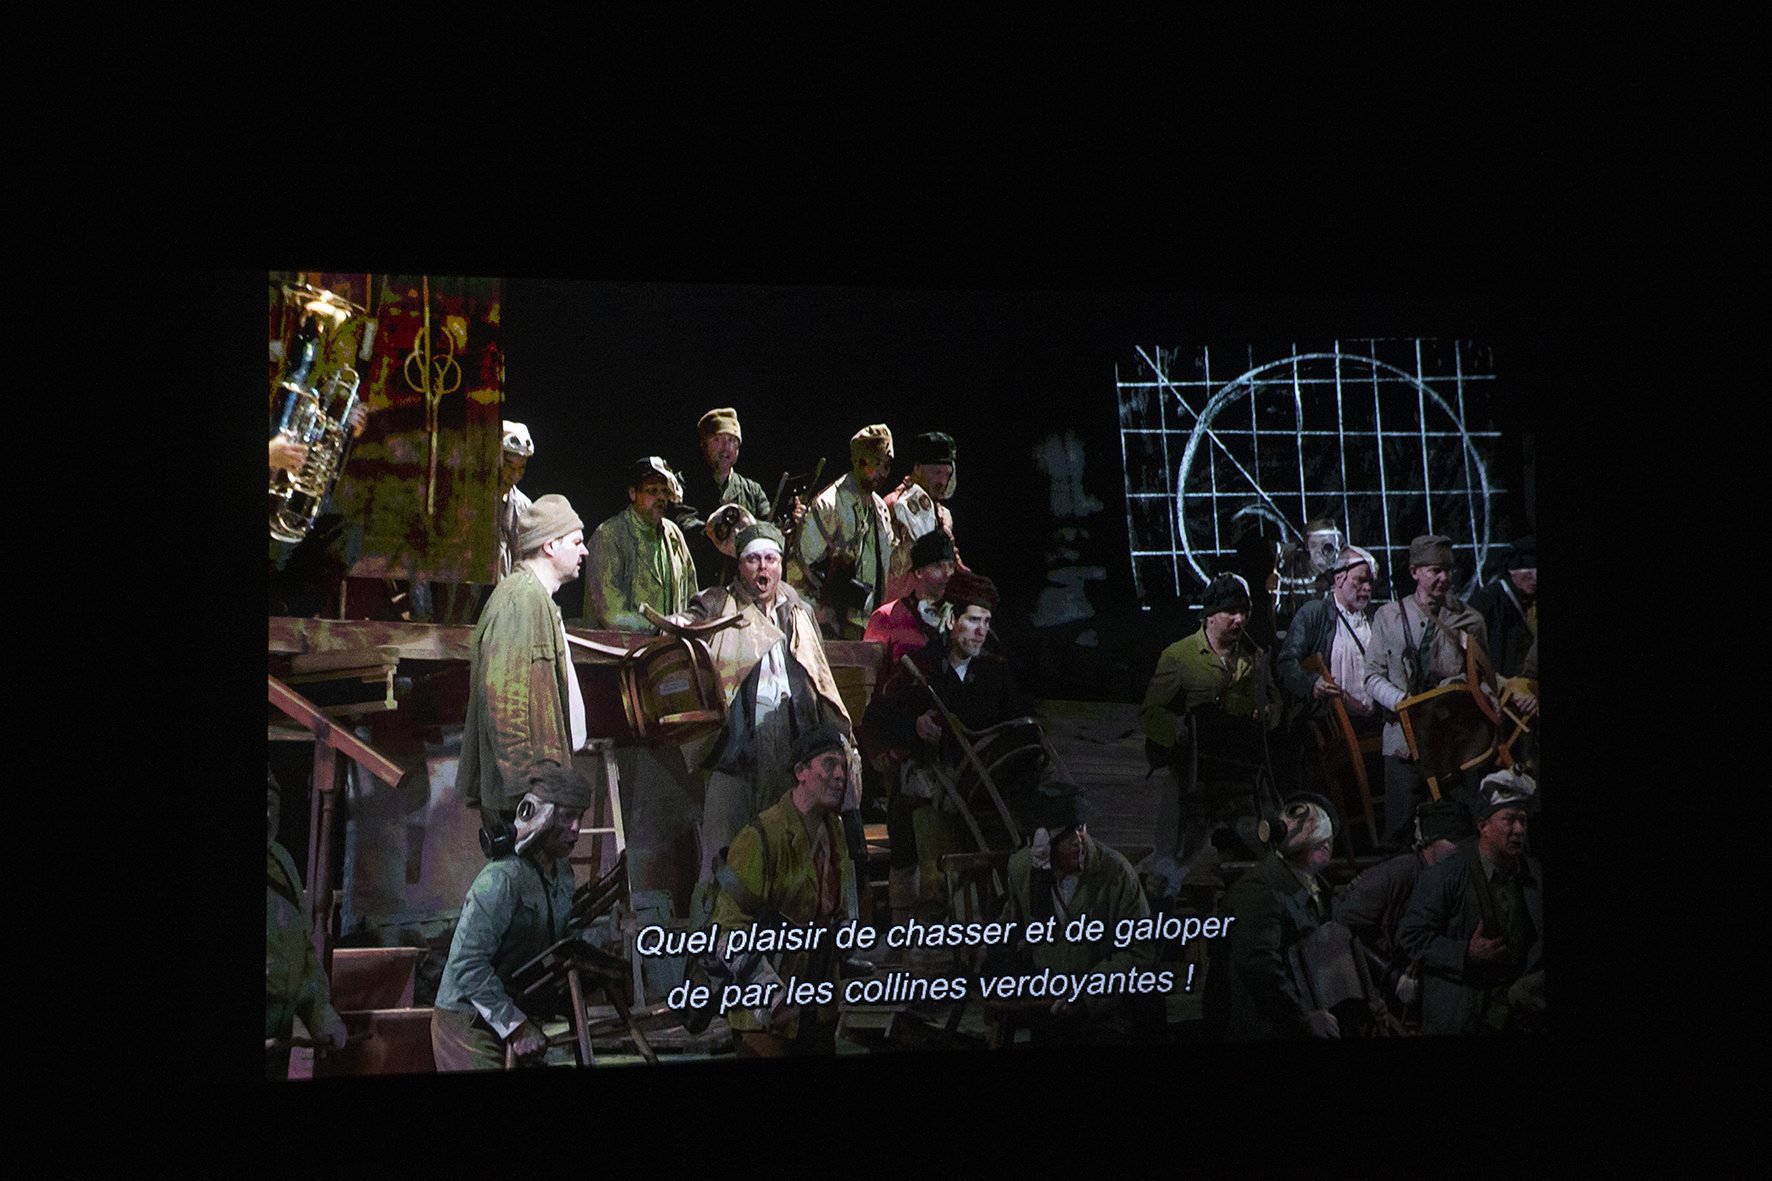 L'opéra "Wozzeck" a été projeté samedi soir en direct à l'Apollo 1 à Neuchâtel.